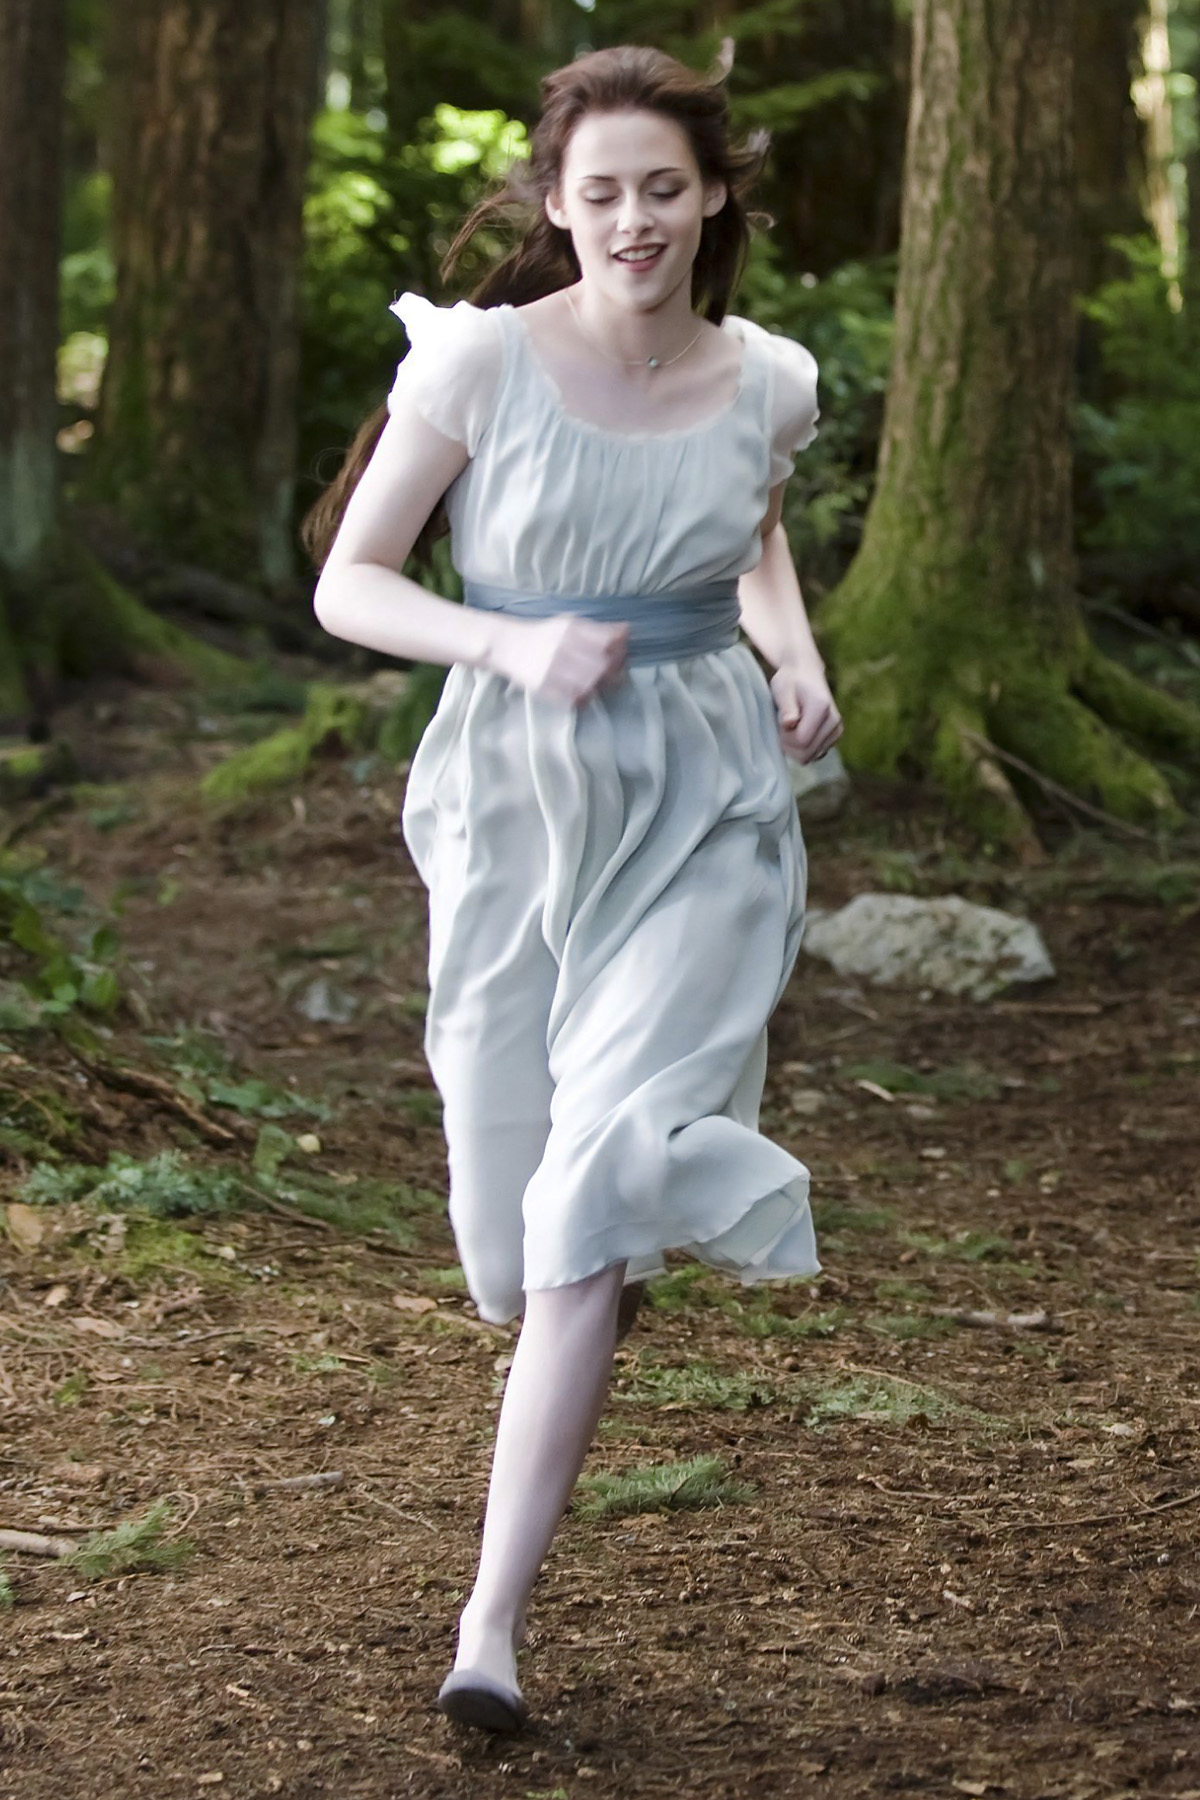 Kristen Stewart in The Twilight Saga: New Moon